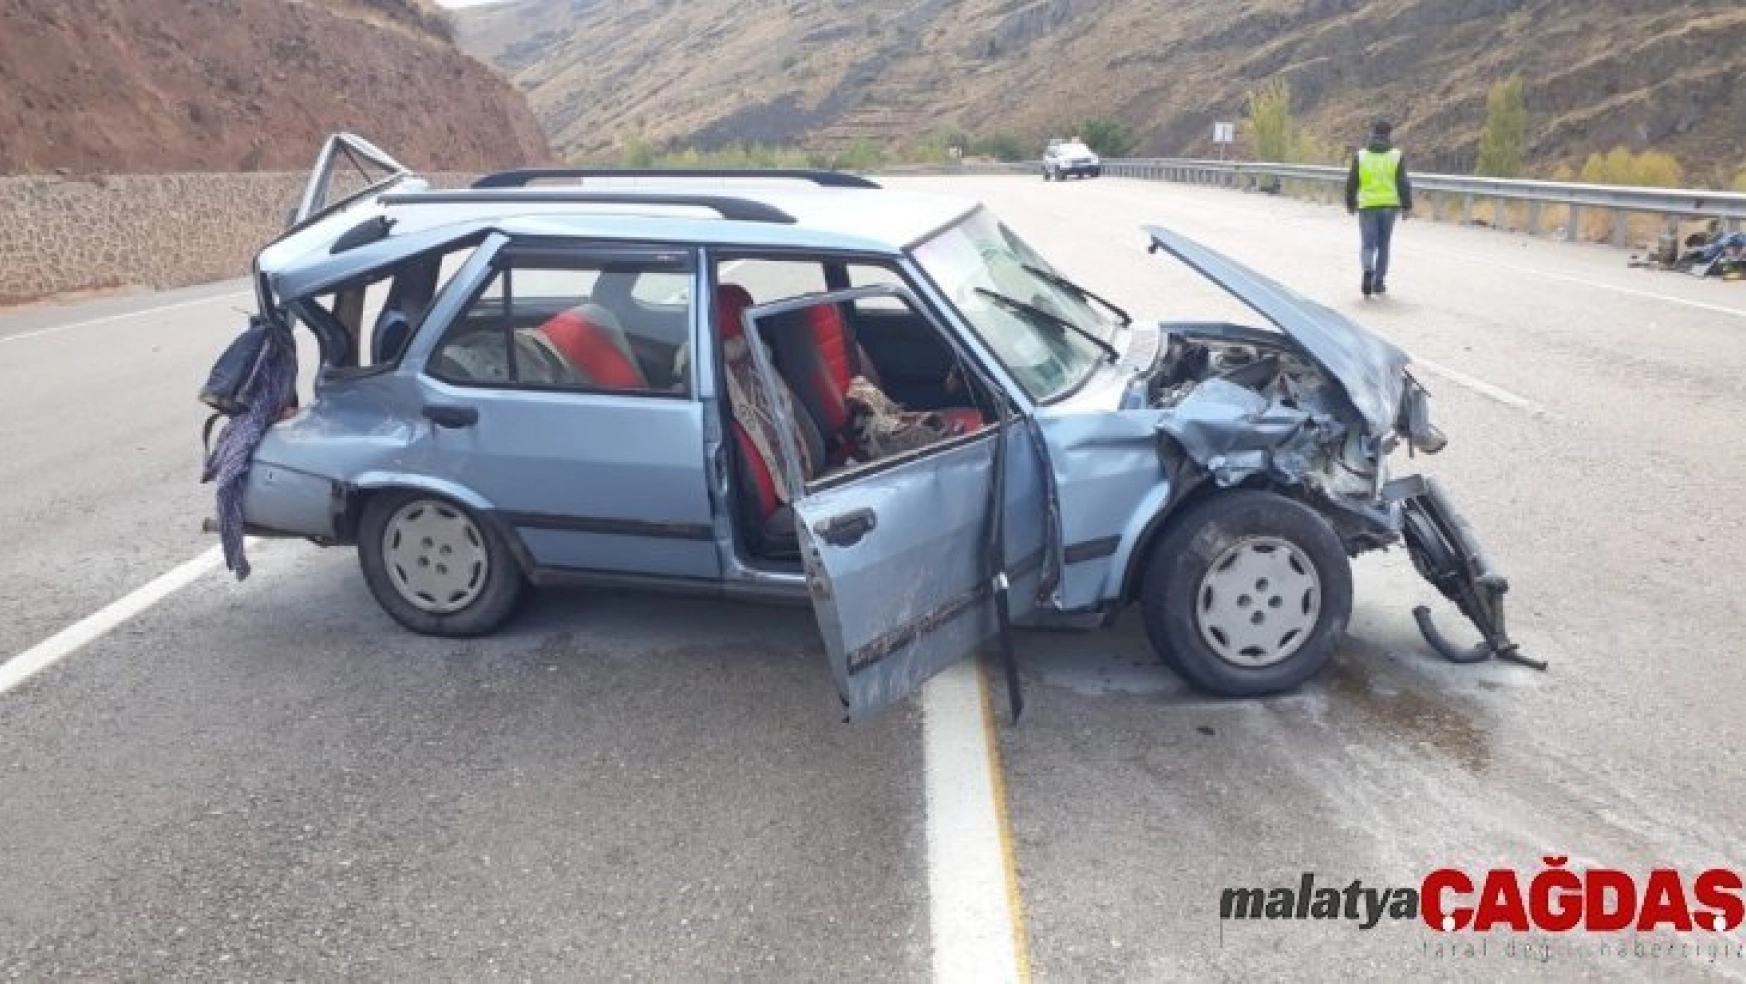 Malatya'da otomobil bariyerlere çarptı: 6 yaralı